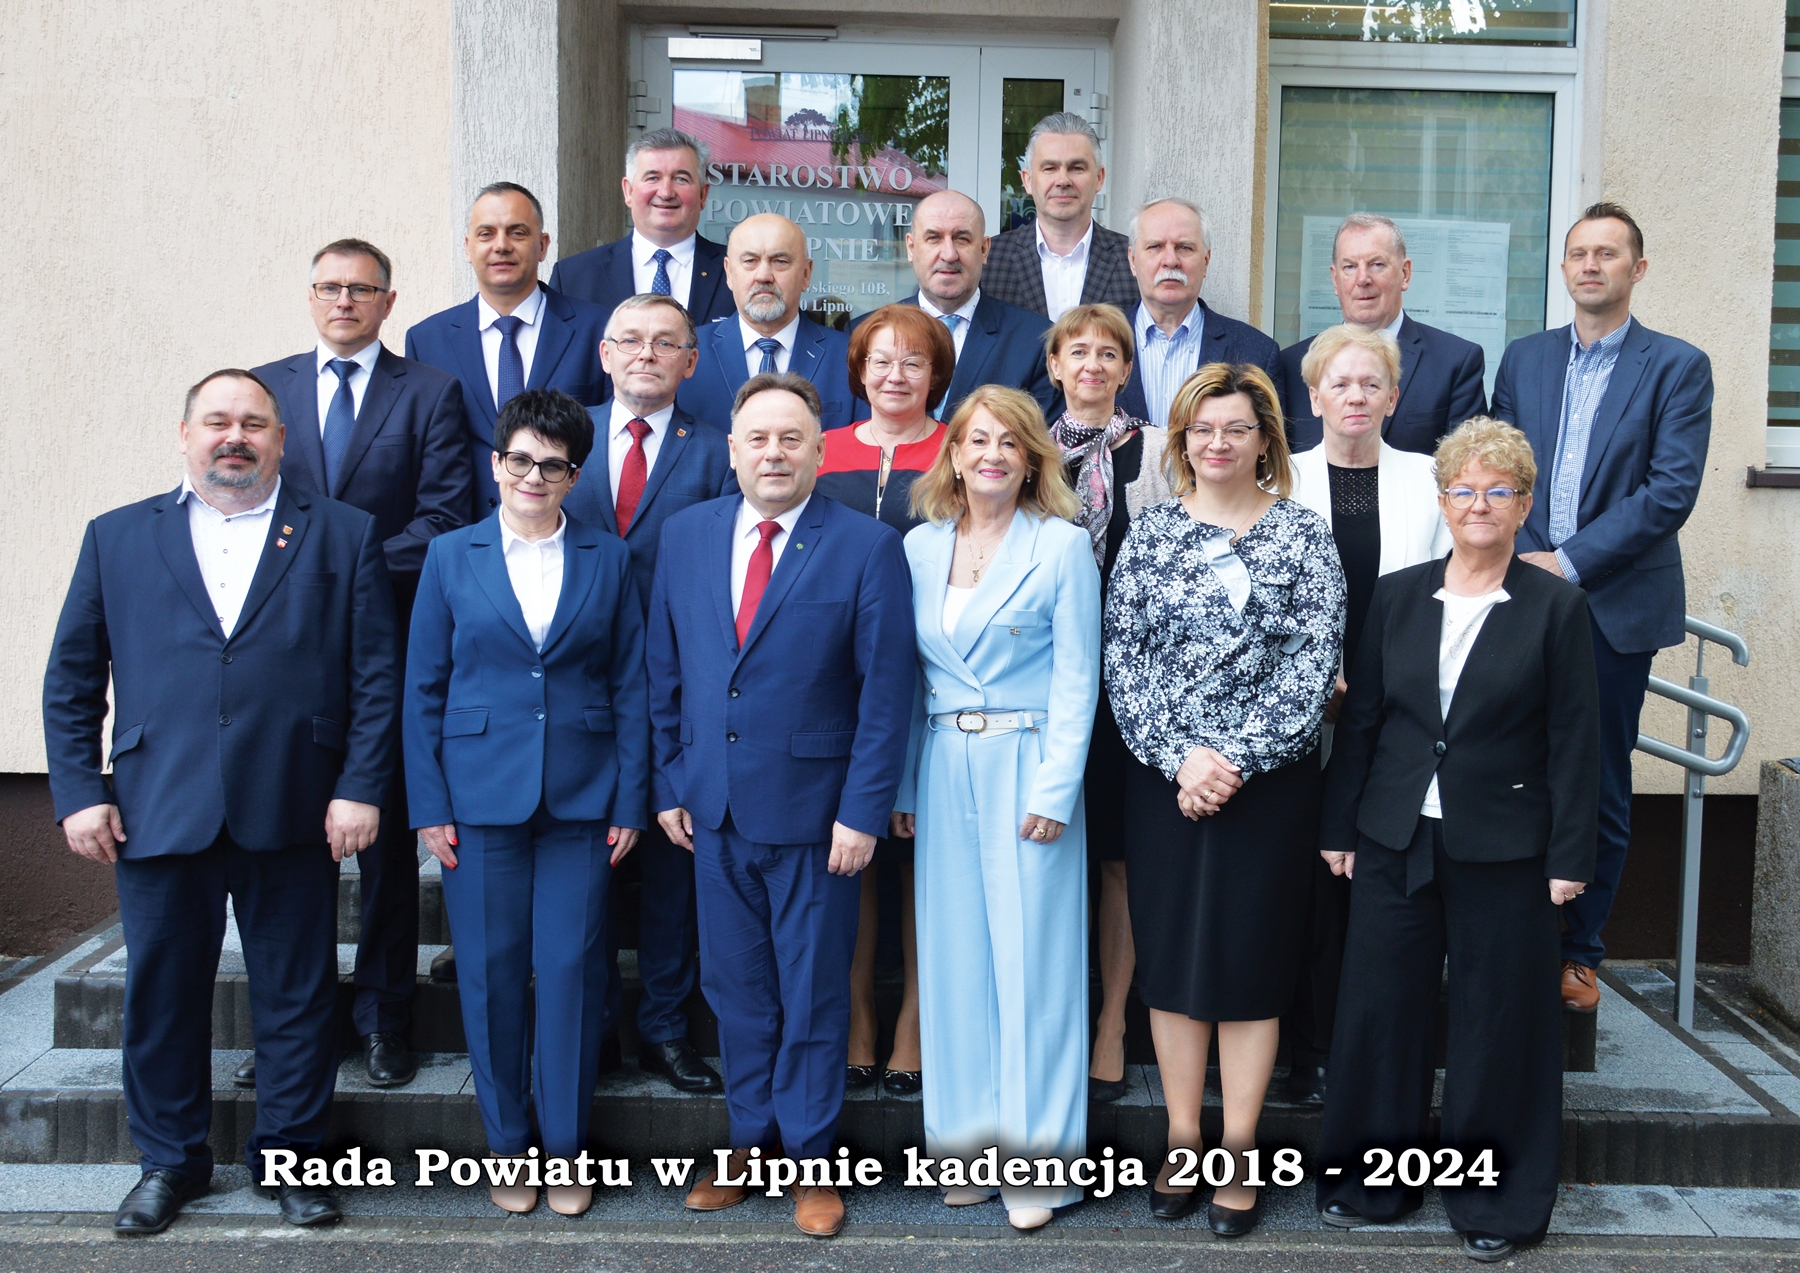 Ostatnia sesja Rady Powiatu w Lipnie kadencji 2018-2024